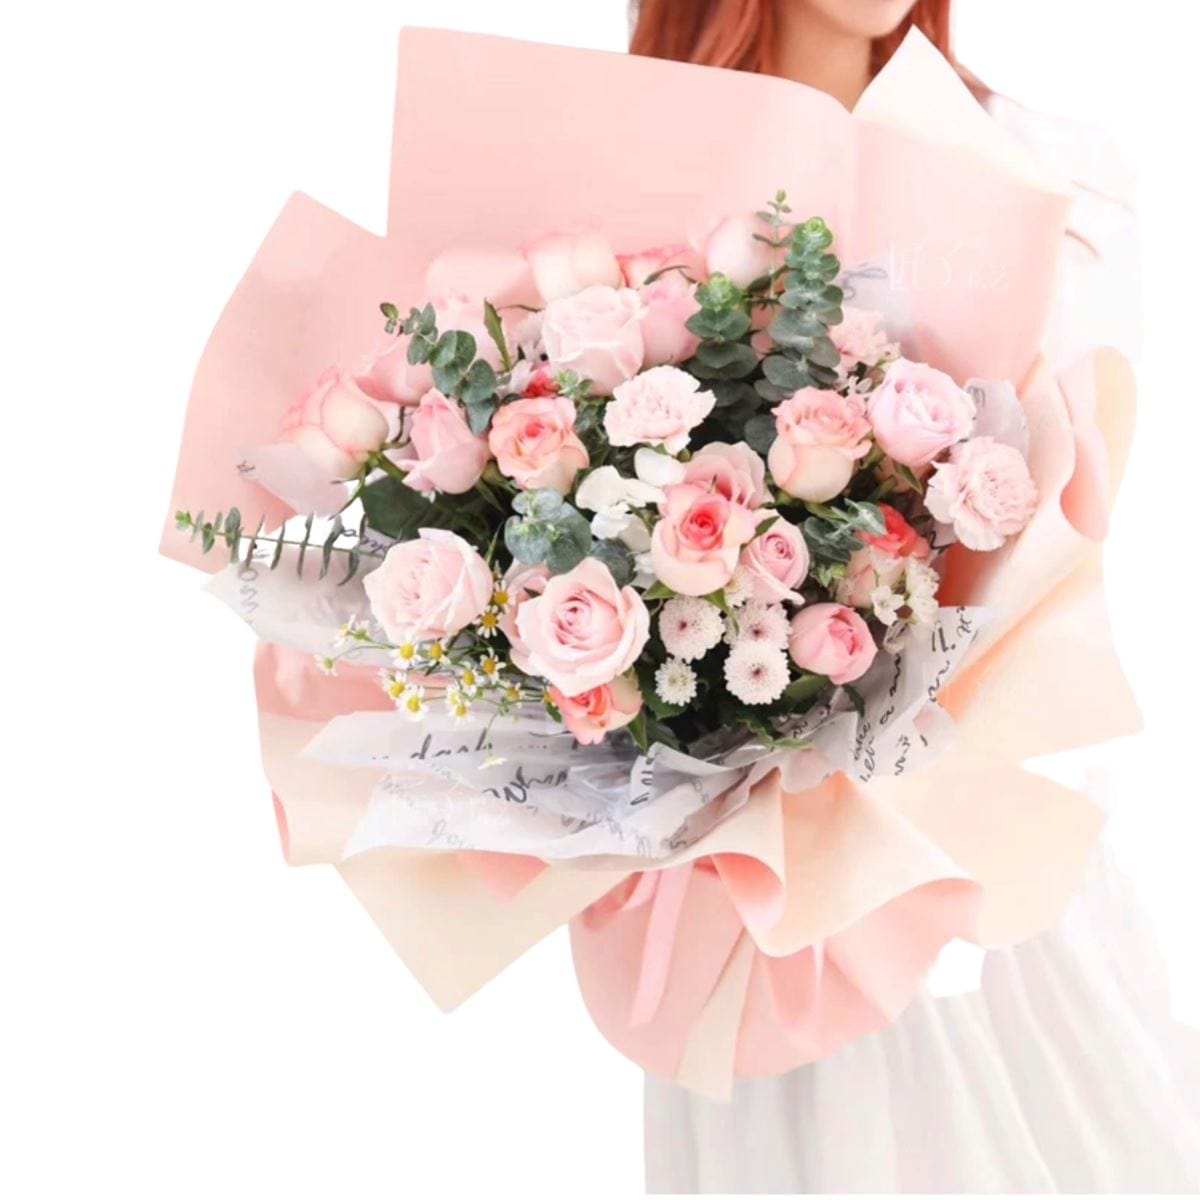 Innocent Beauty - Flower - Preserved Flowers & Fresh Flower Florist Gift Store